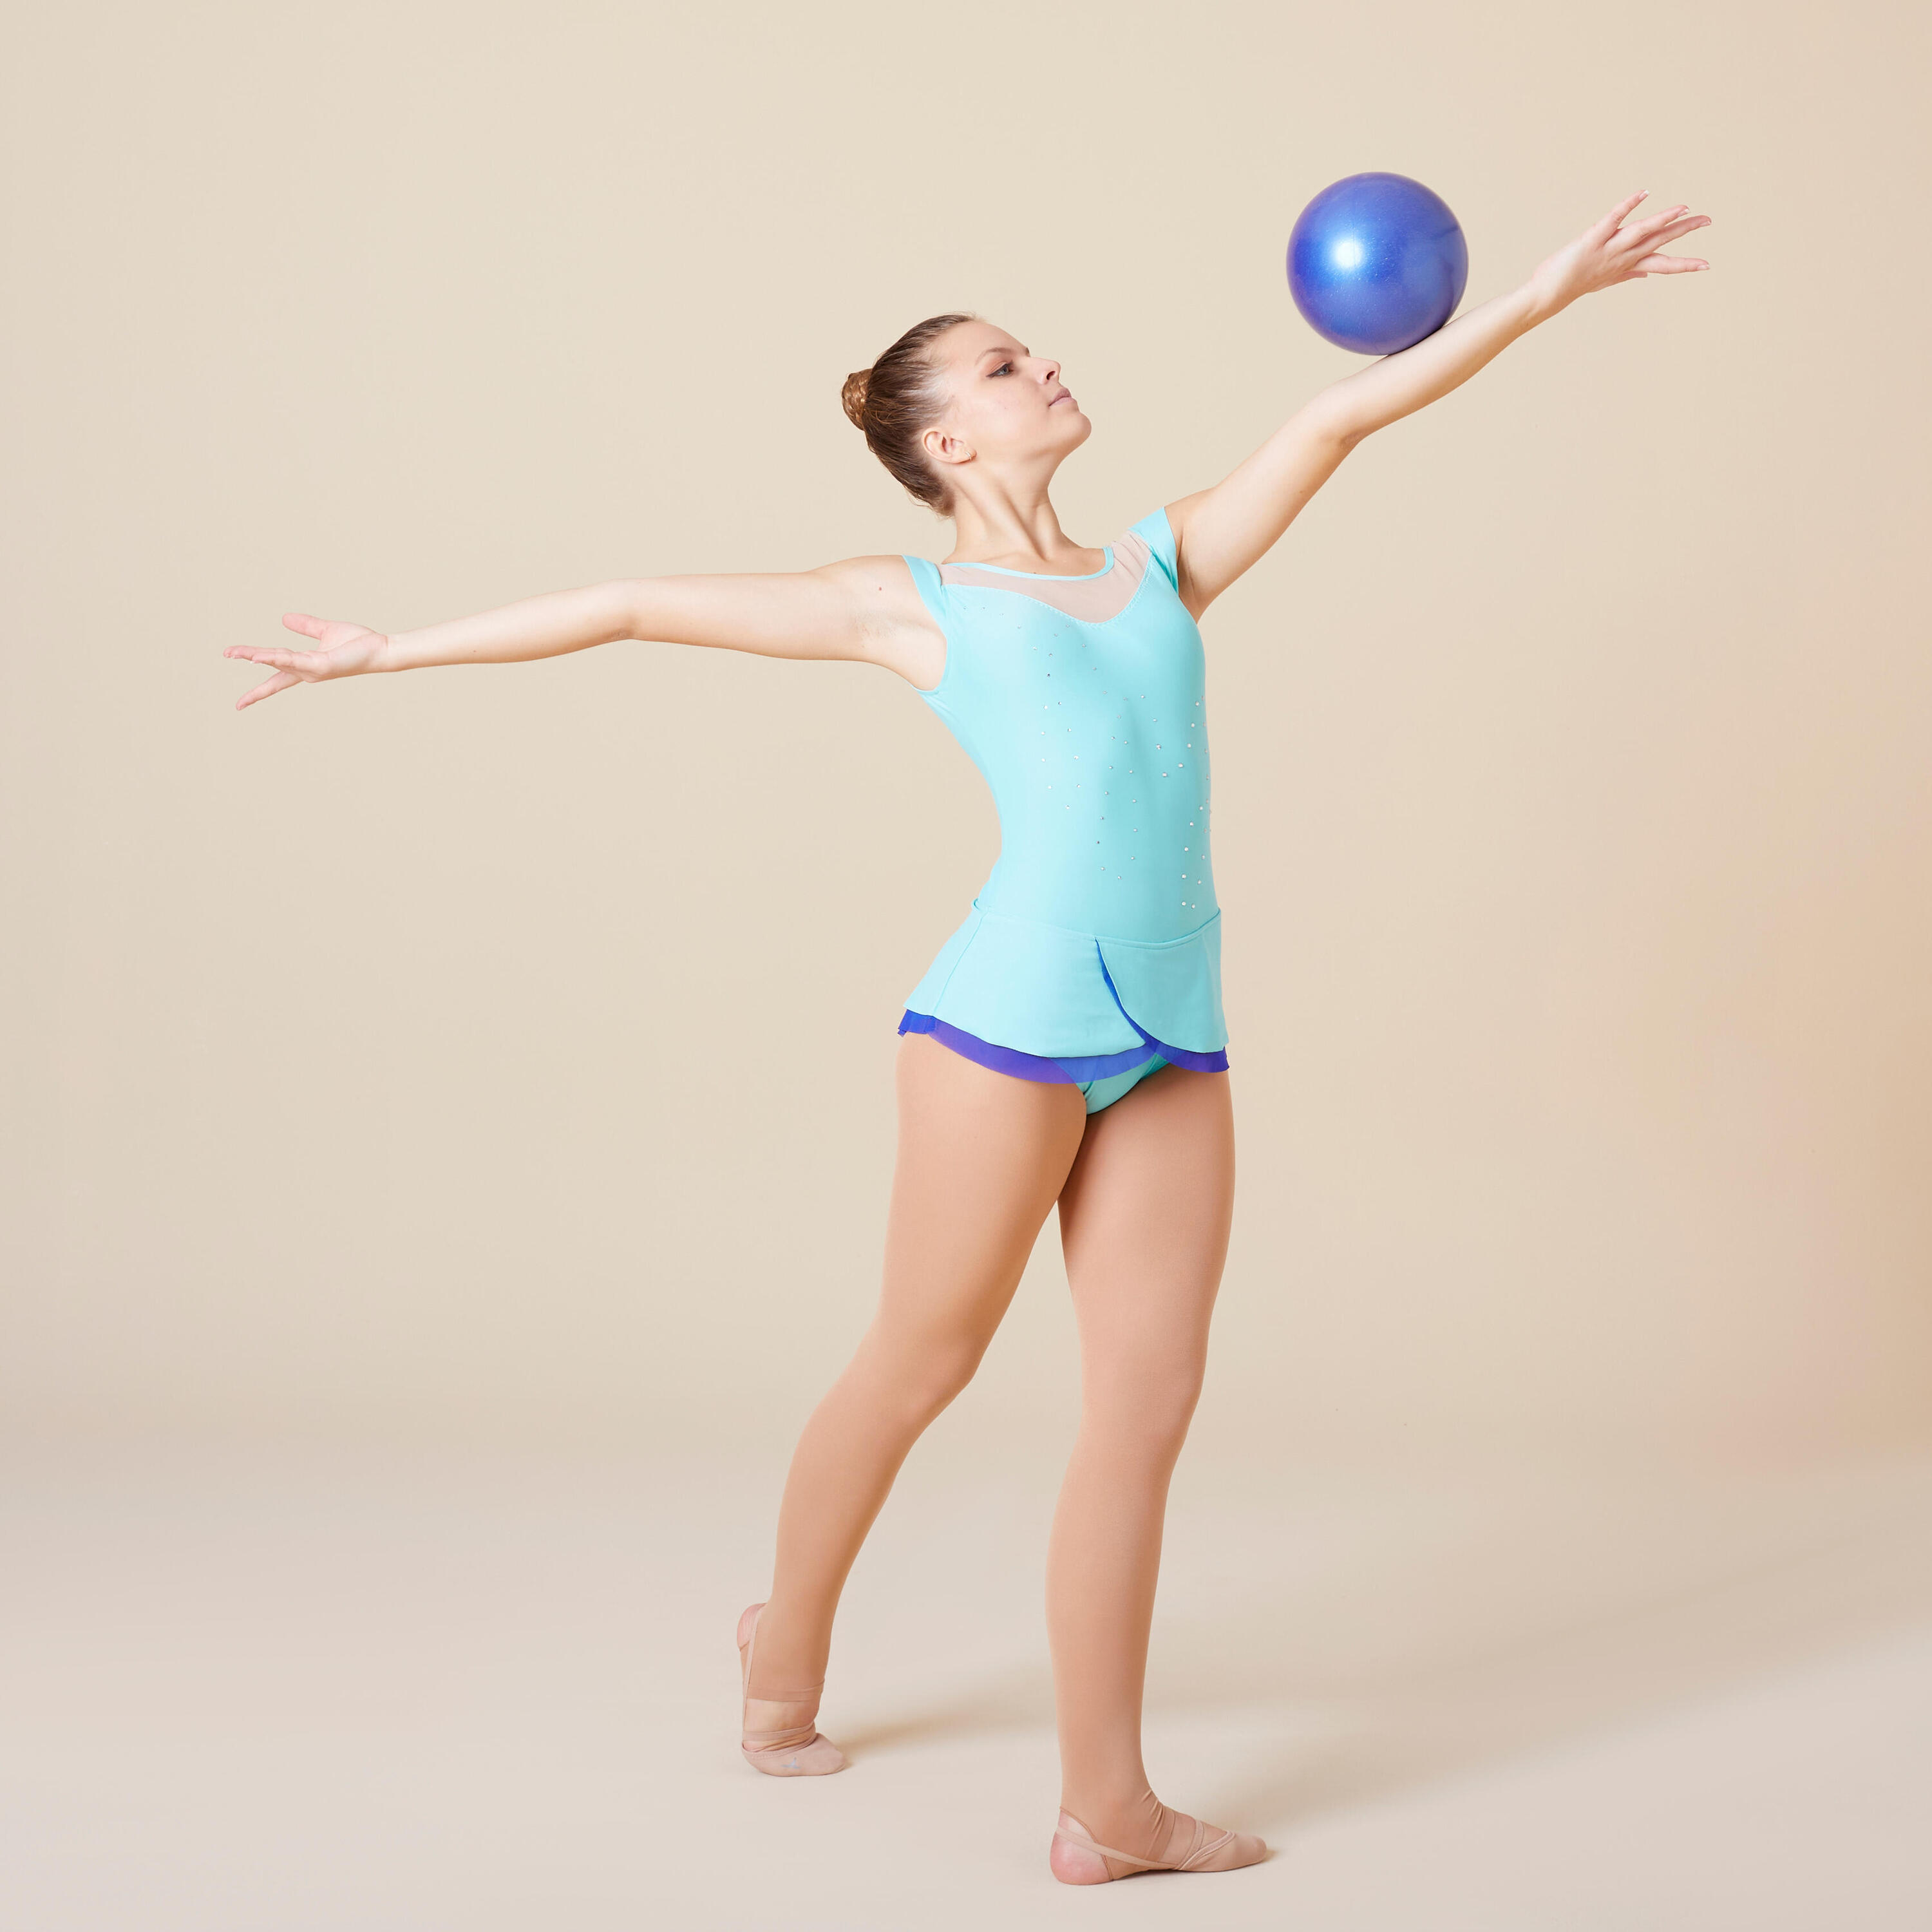 18.5 cm Rhythmic Gymnastics Ball - Indigo Blue 3/6